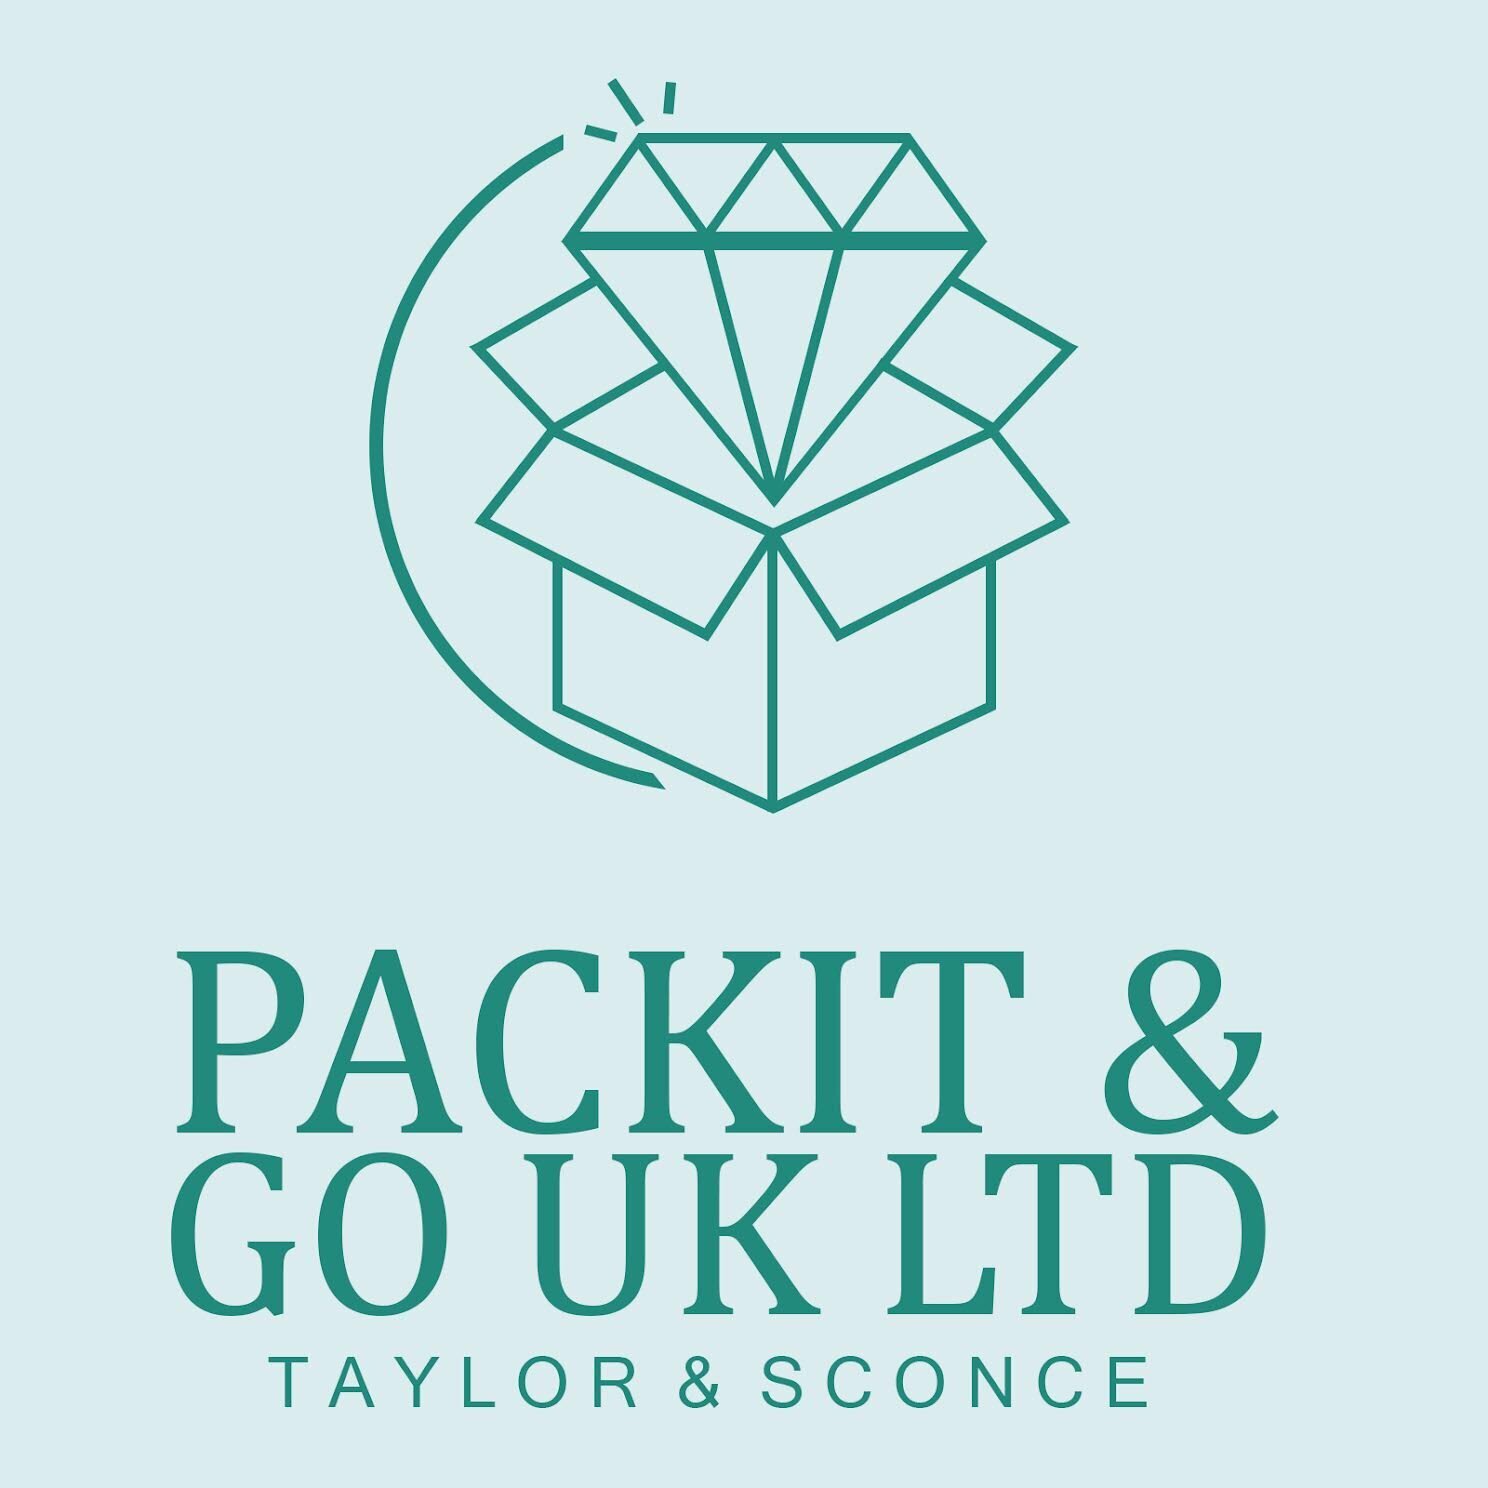 Packit & Go UK Ltd Chorley 01257 261334